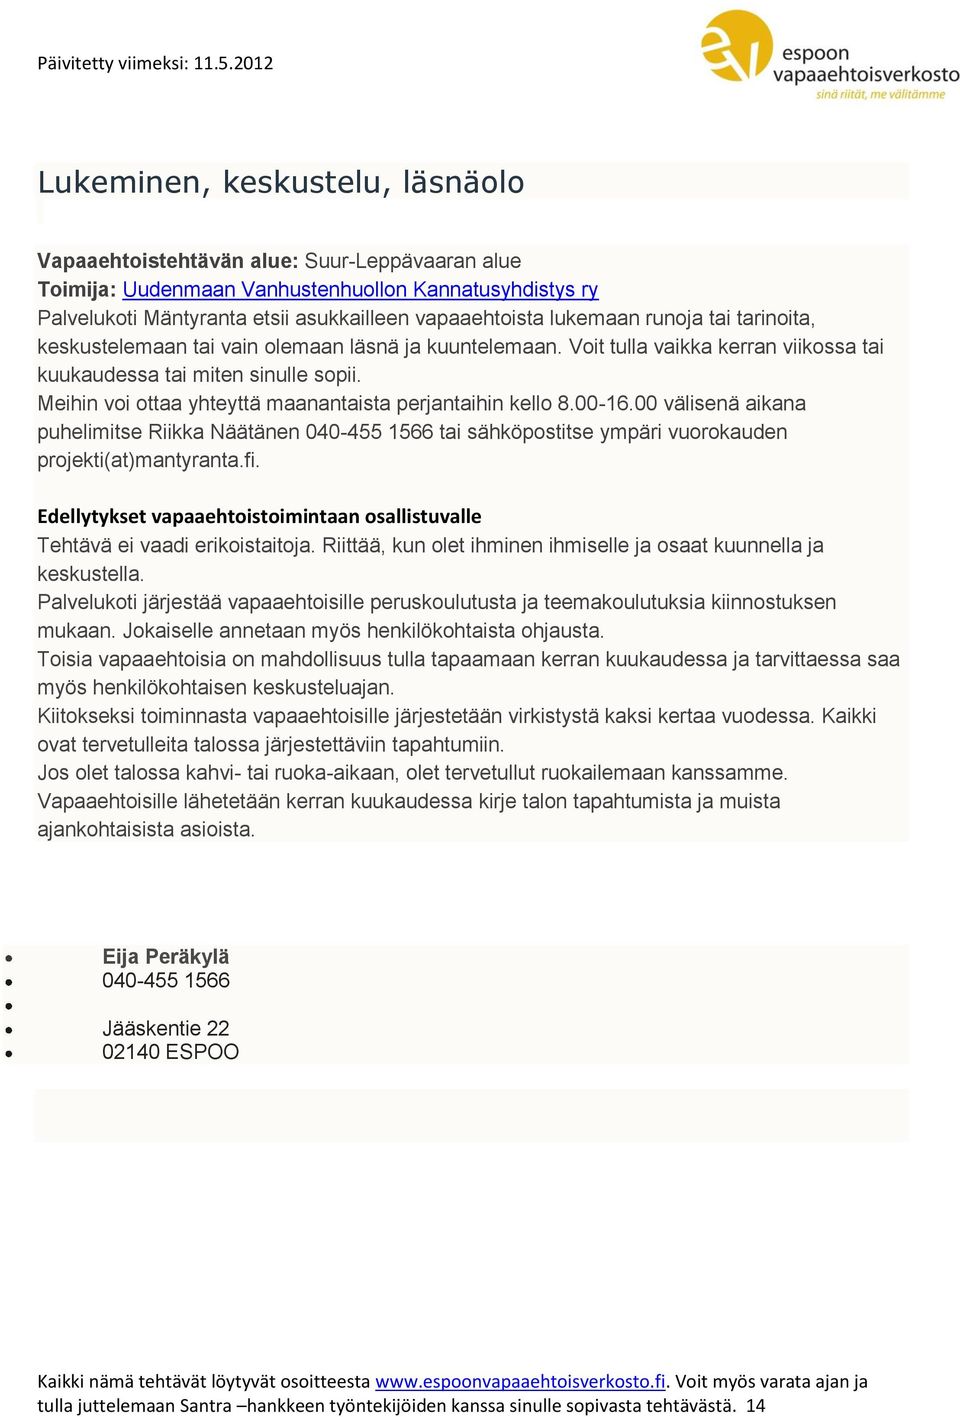 00 välisenä aikana puhelimitse Riikka Näätänen 040-455 1566 tai sähköpostitse ympäri vuorokauden projekti(at)mantyranta.fi. Tehtävä ei vaadi erikoistaitoja.